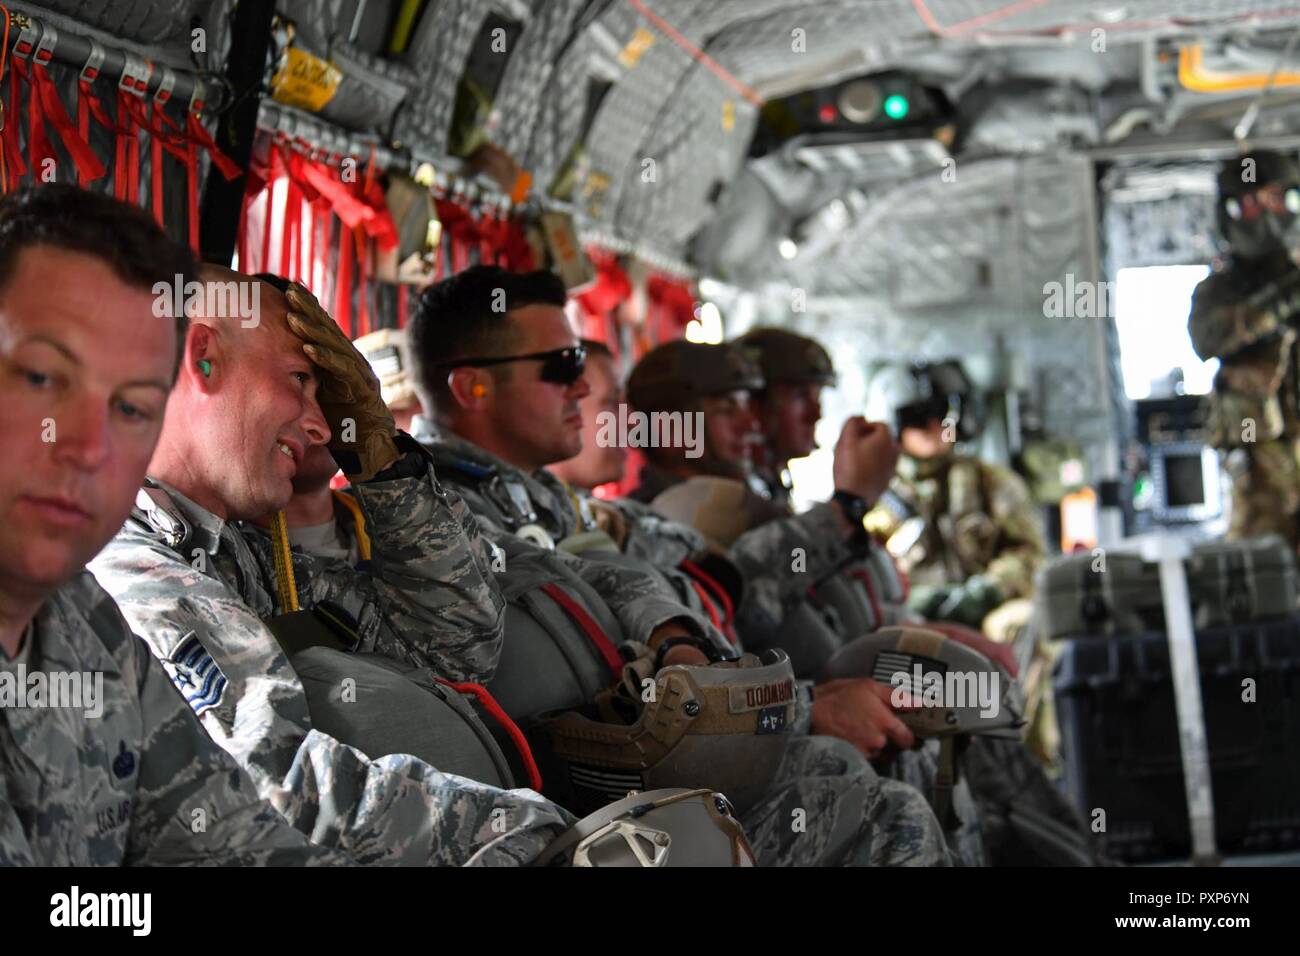 Us Air Force Piloten in die 435Th Contingency Response Group belegt in einem U.S. Army CH-47 Chinook während der Übung Sabre Strike17 am Lielvarde Air Base, Lettland, Juni 10, 2017 sitzen. Die 435Th CRG Flieger mit dem Fallschirm aus dem Chinook, sie für solche Operationen bei der Bereitstellung vorzubereiten. Sabre Streik 17 Highlights Die inhärente Flexibilität der Land- und Luftstreitkräfte, schnell auf Krisen, die die richtige Präsenz, wo es gebraucht wird, reagieren, wenn es erforderlich ist. Stockfoto